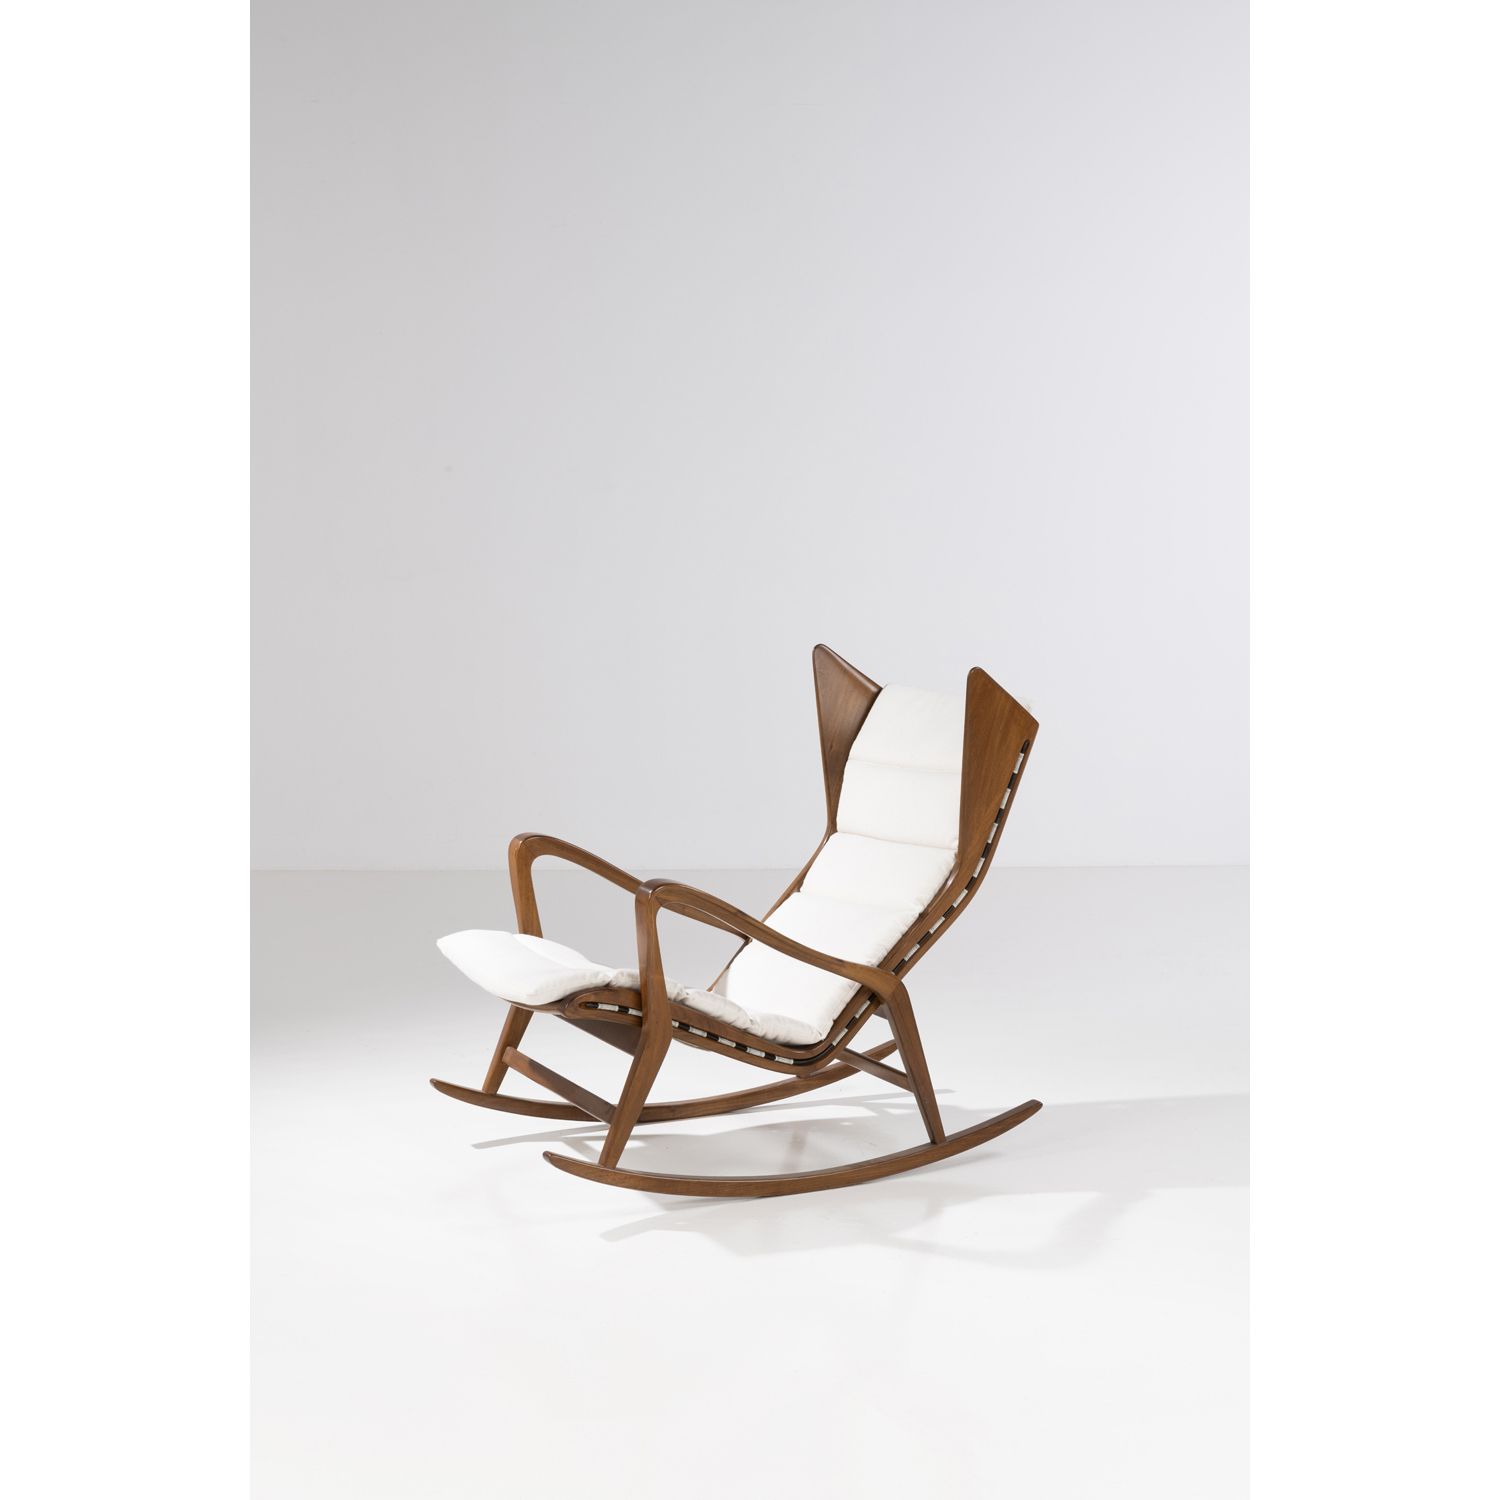 Null 卡西纳技术工作室 (20)

摇椅

榛林和纺织

卡西纳版

创建于1950年代的模型

高94×宽66×深102厘米